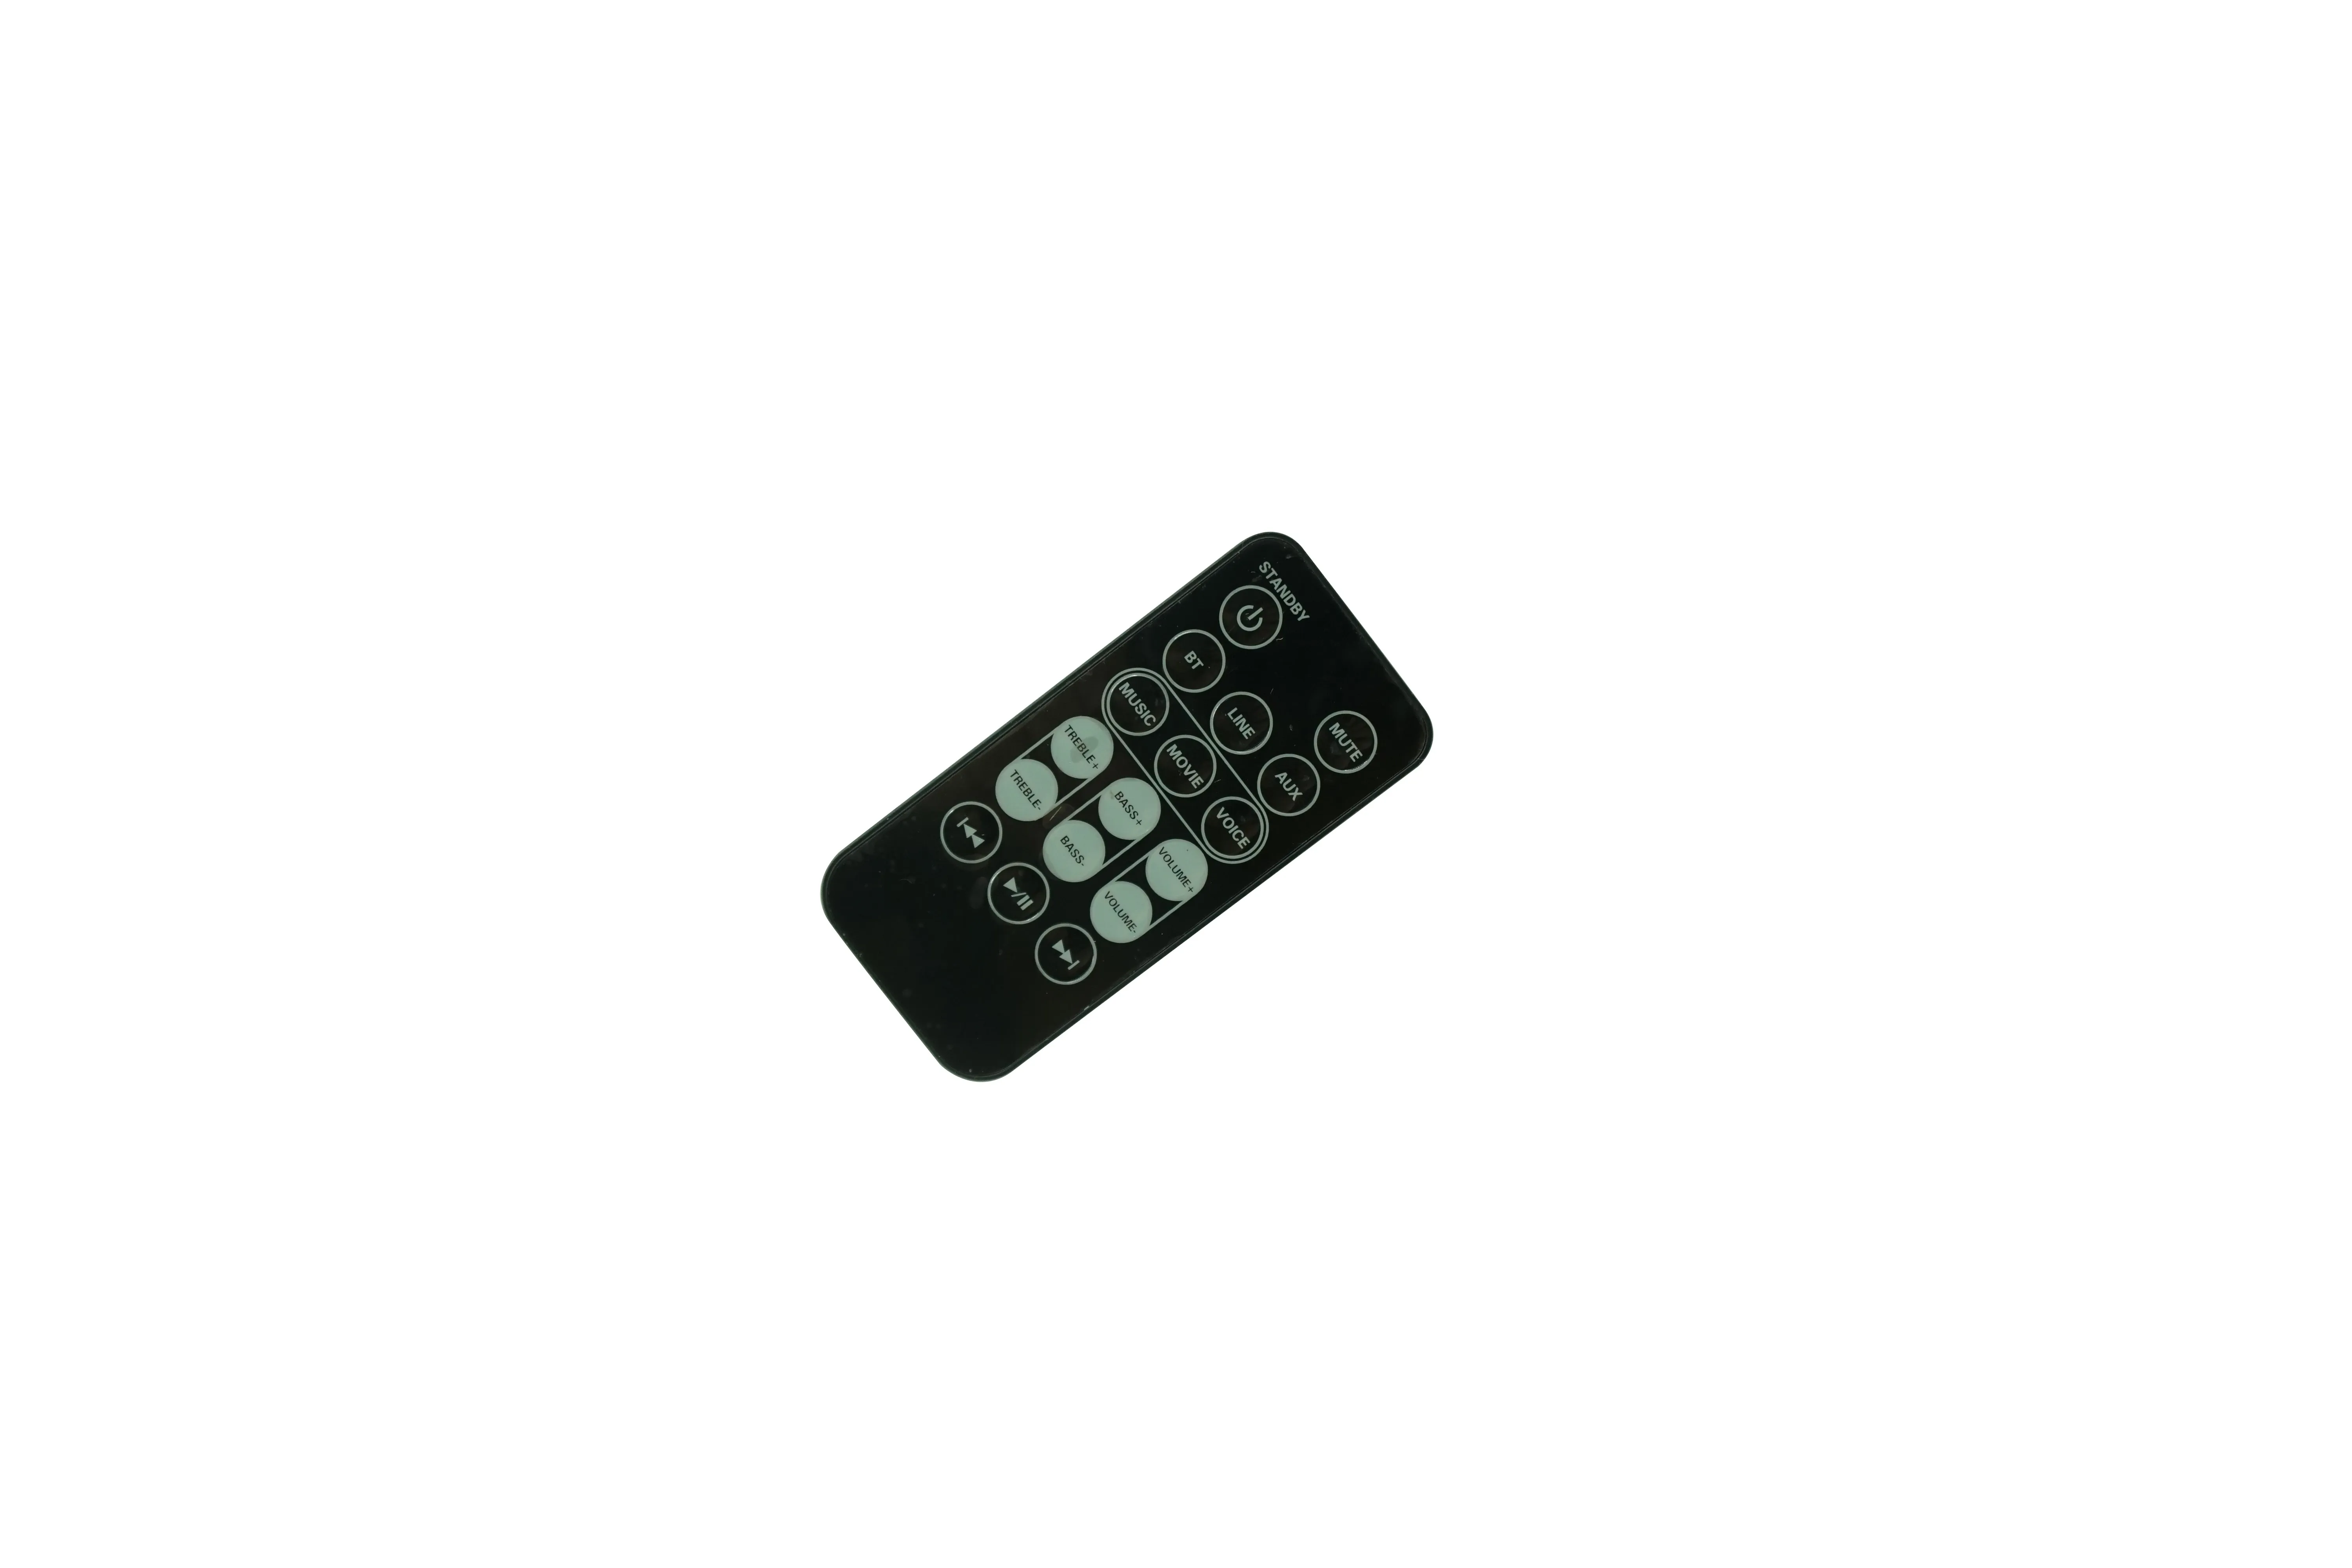 Télécommande pour Goodmans GDSB04BT50 330368 GDSB04BT50X GDSBT30CS GDSBT 30 CS, barre de son Bluetooth, système de haut-parleurs pour cinéma maison